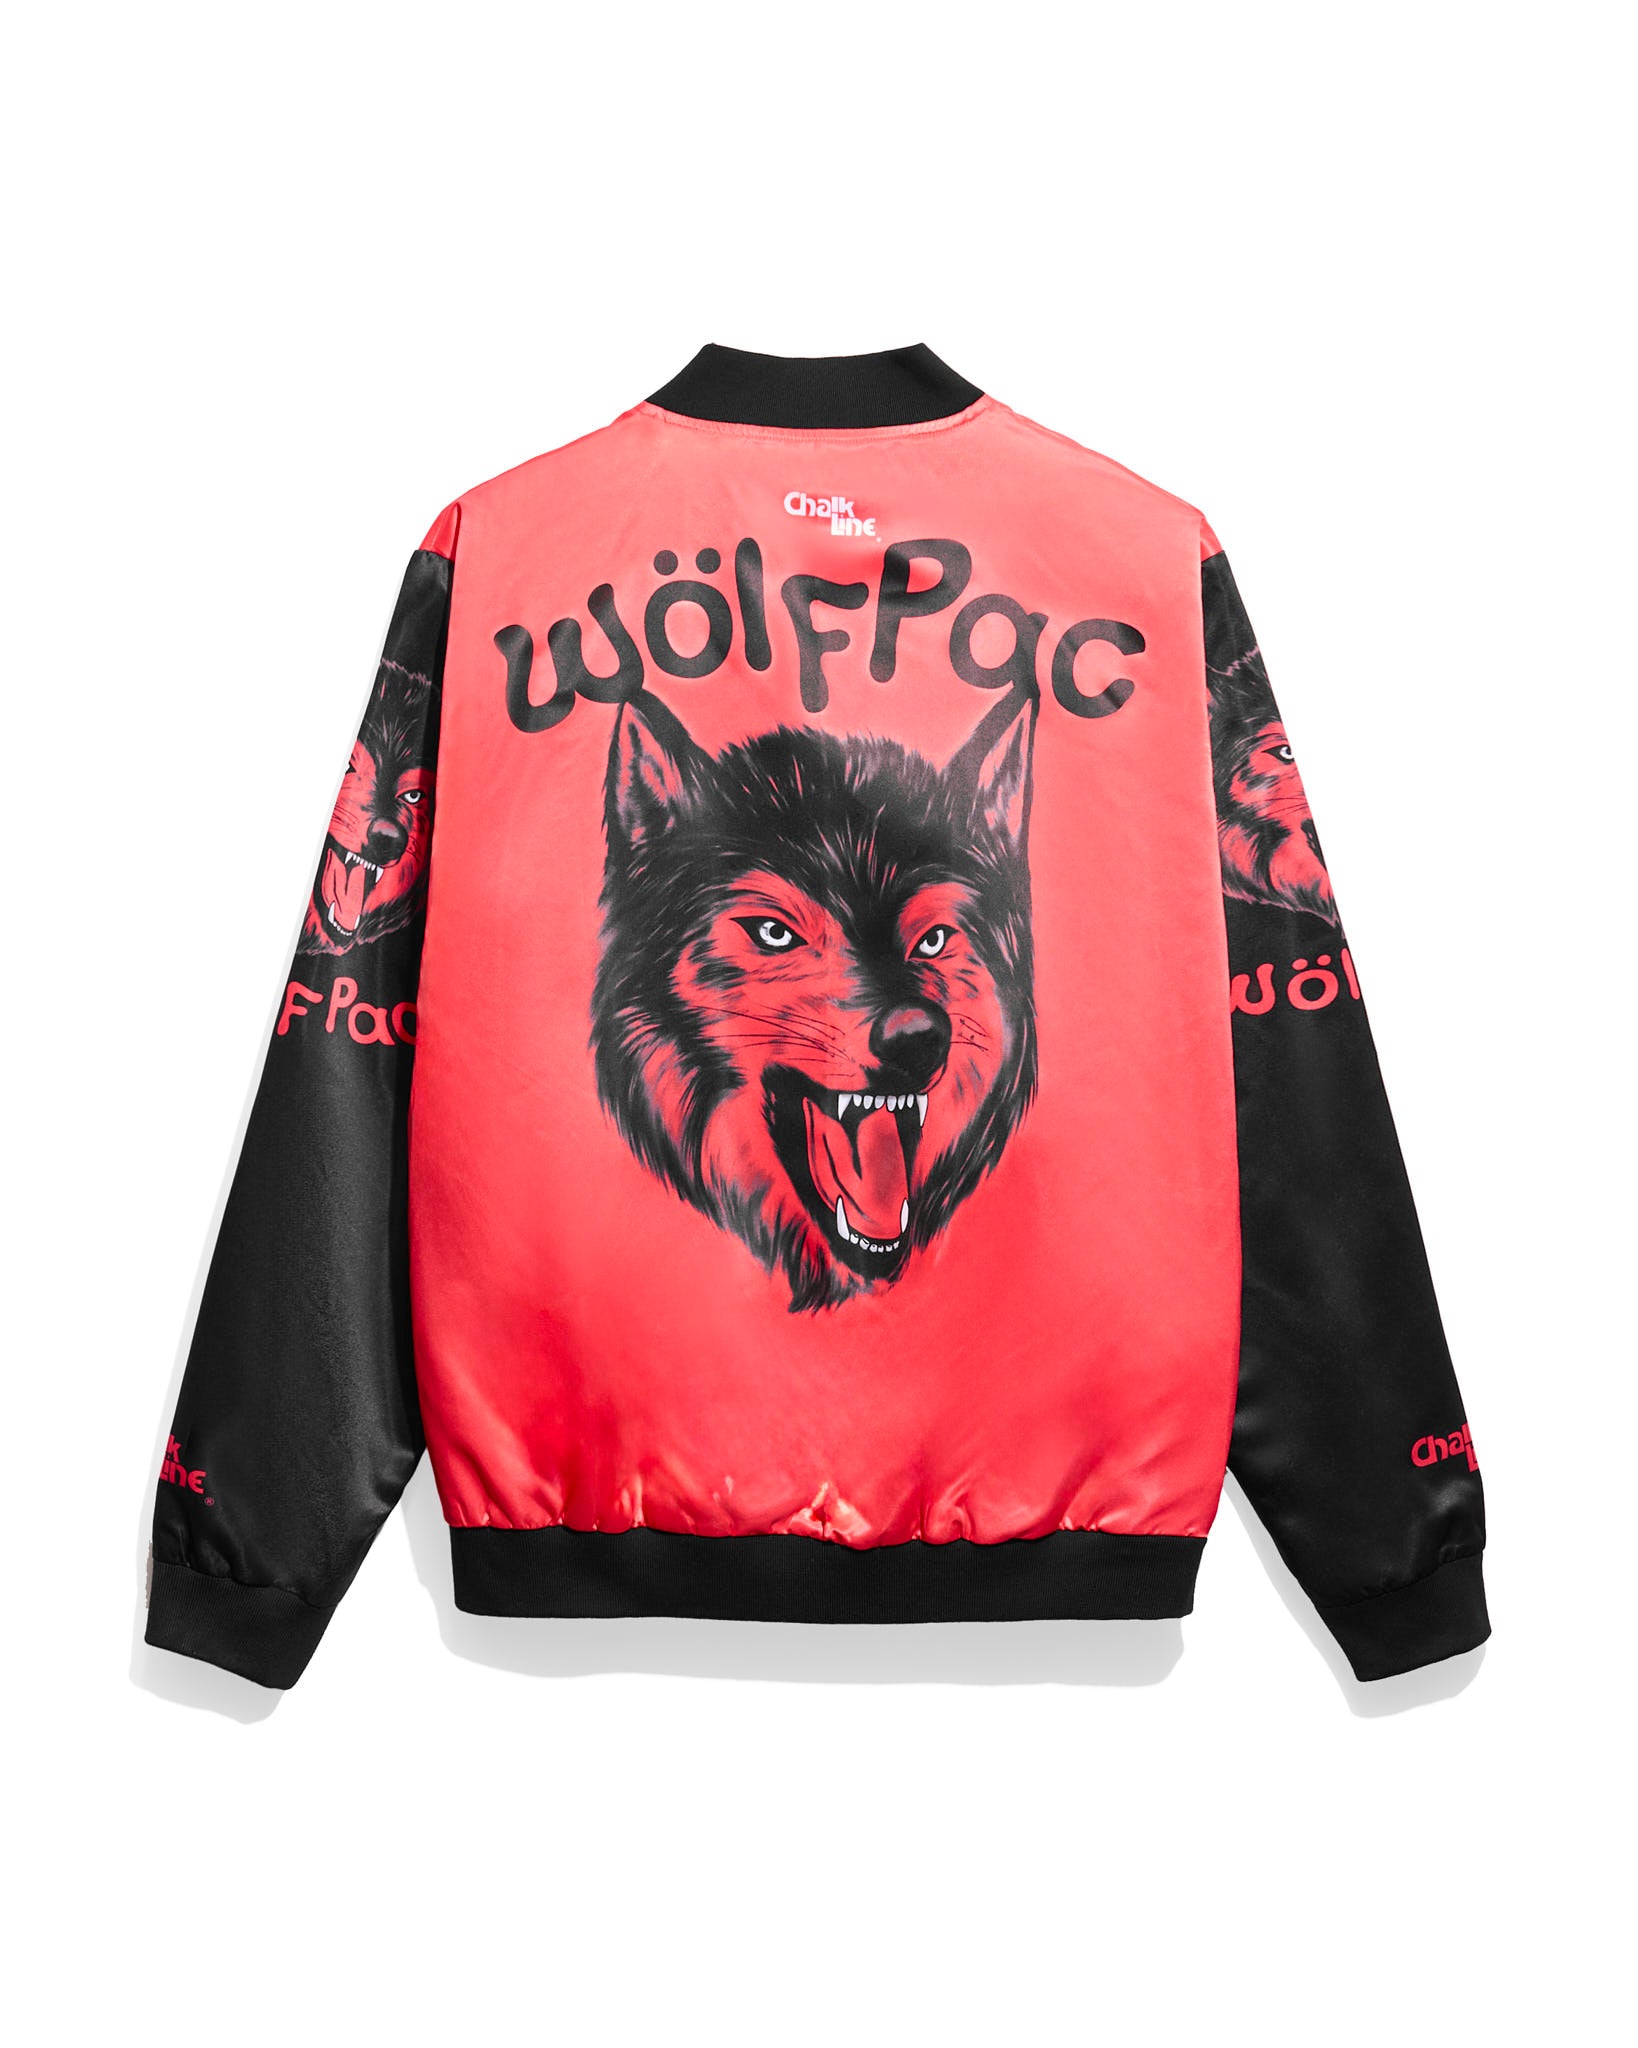 NWO Wolfpac OG Fanimation Jacket